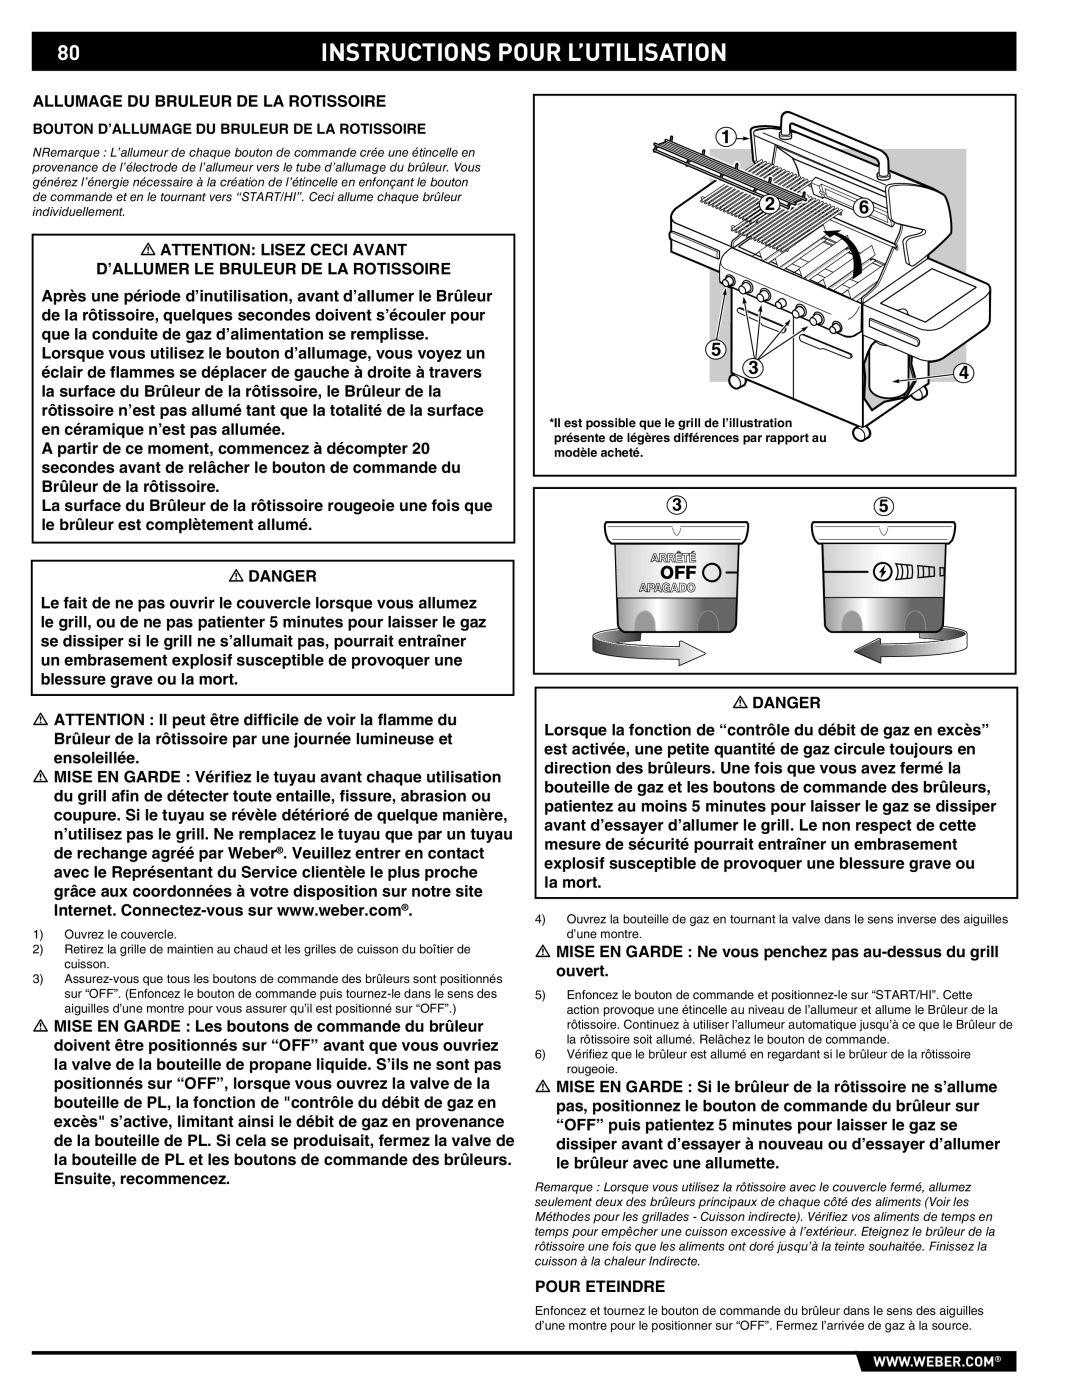 Summit 89190 manual Instructions Pour L’Utilisation, Bouton D’Allumage Du Bruleur De La Rotissoire 